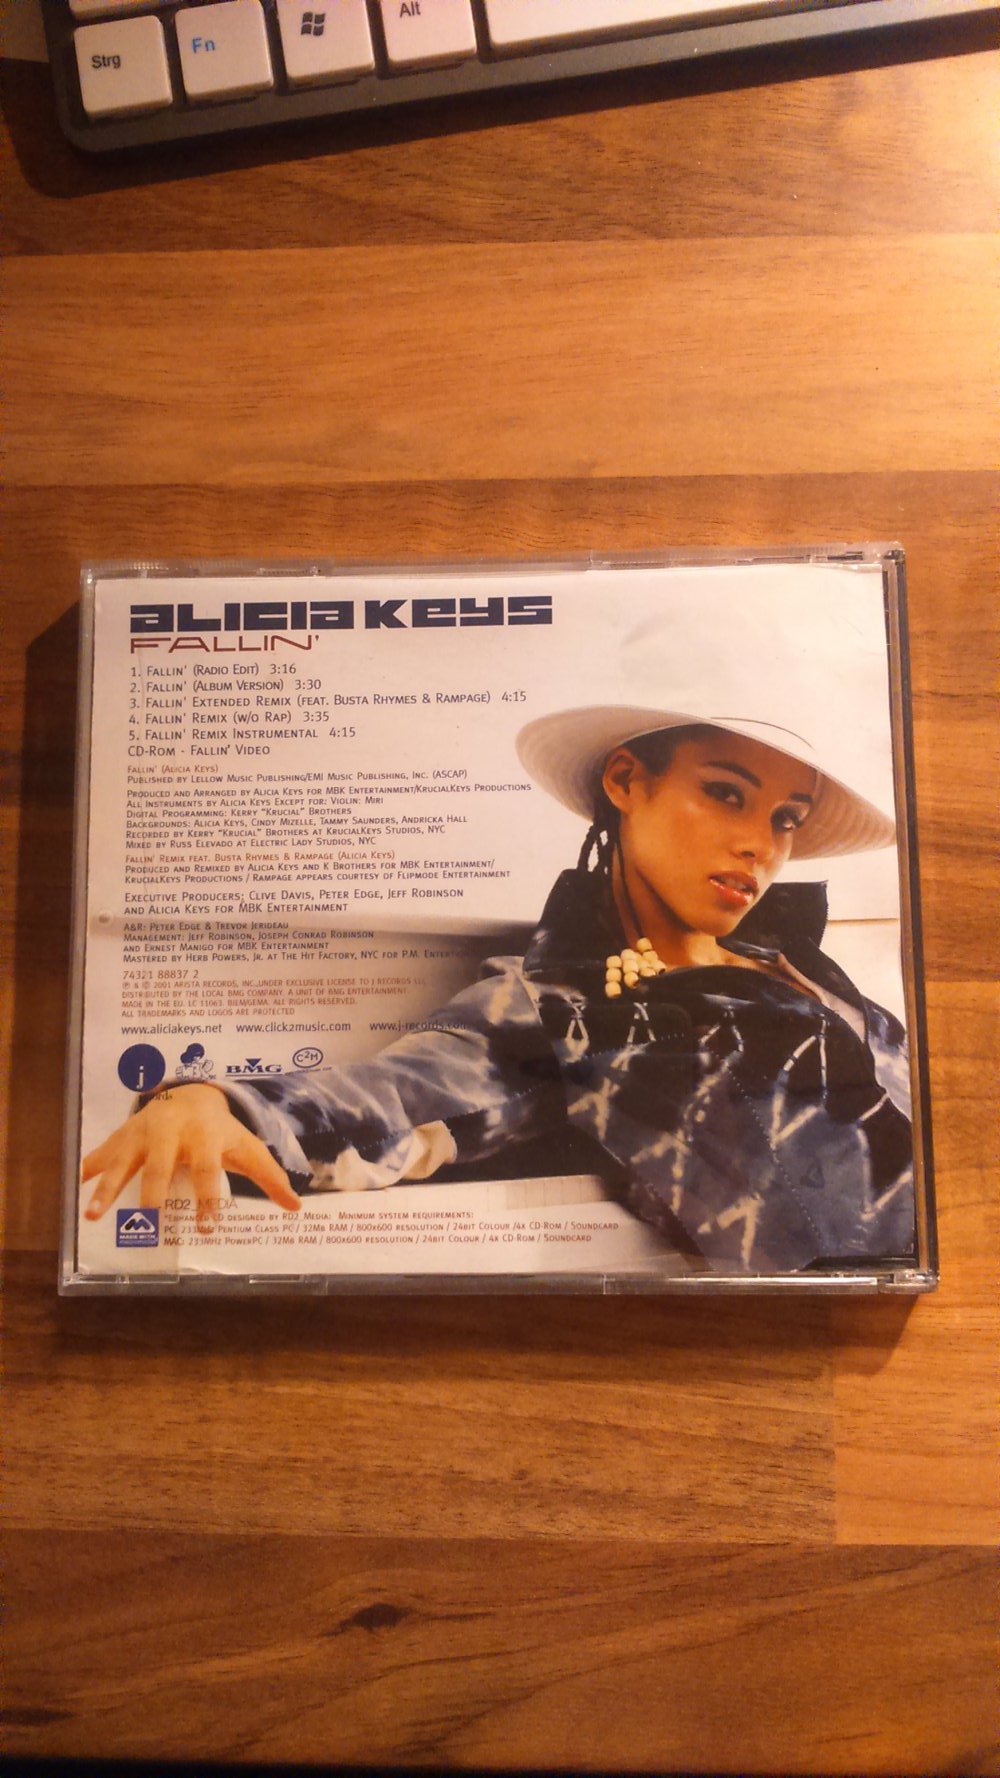 Alicia Keys 